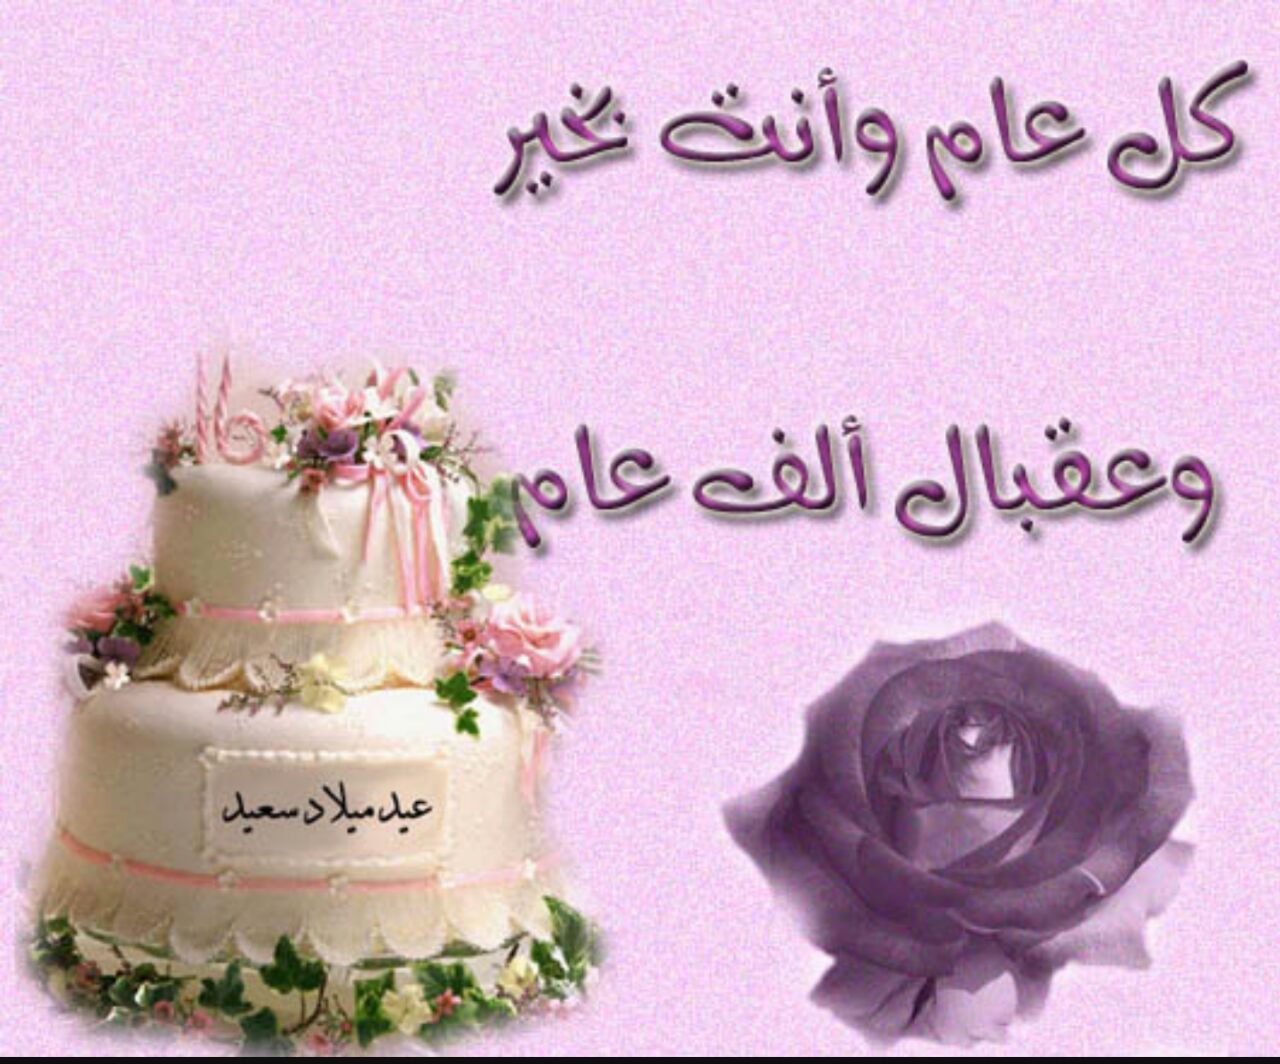 Поздравления с днем рождения на узбекском языке. Поздравление с днем рождения на арабском. Поздравления на арабском языке. Поздравления с днём рождения на арабском языке. Пожелания на арабском языке.